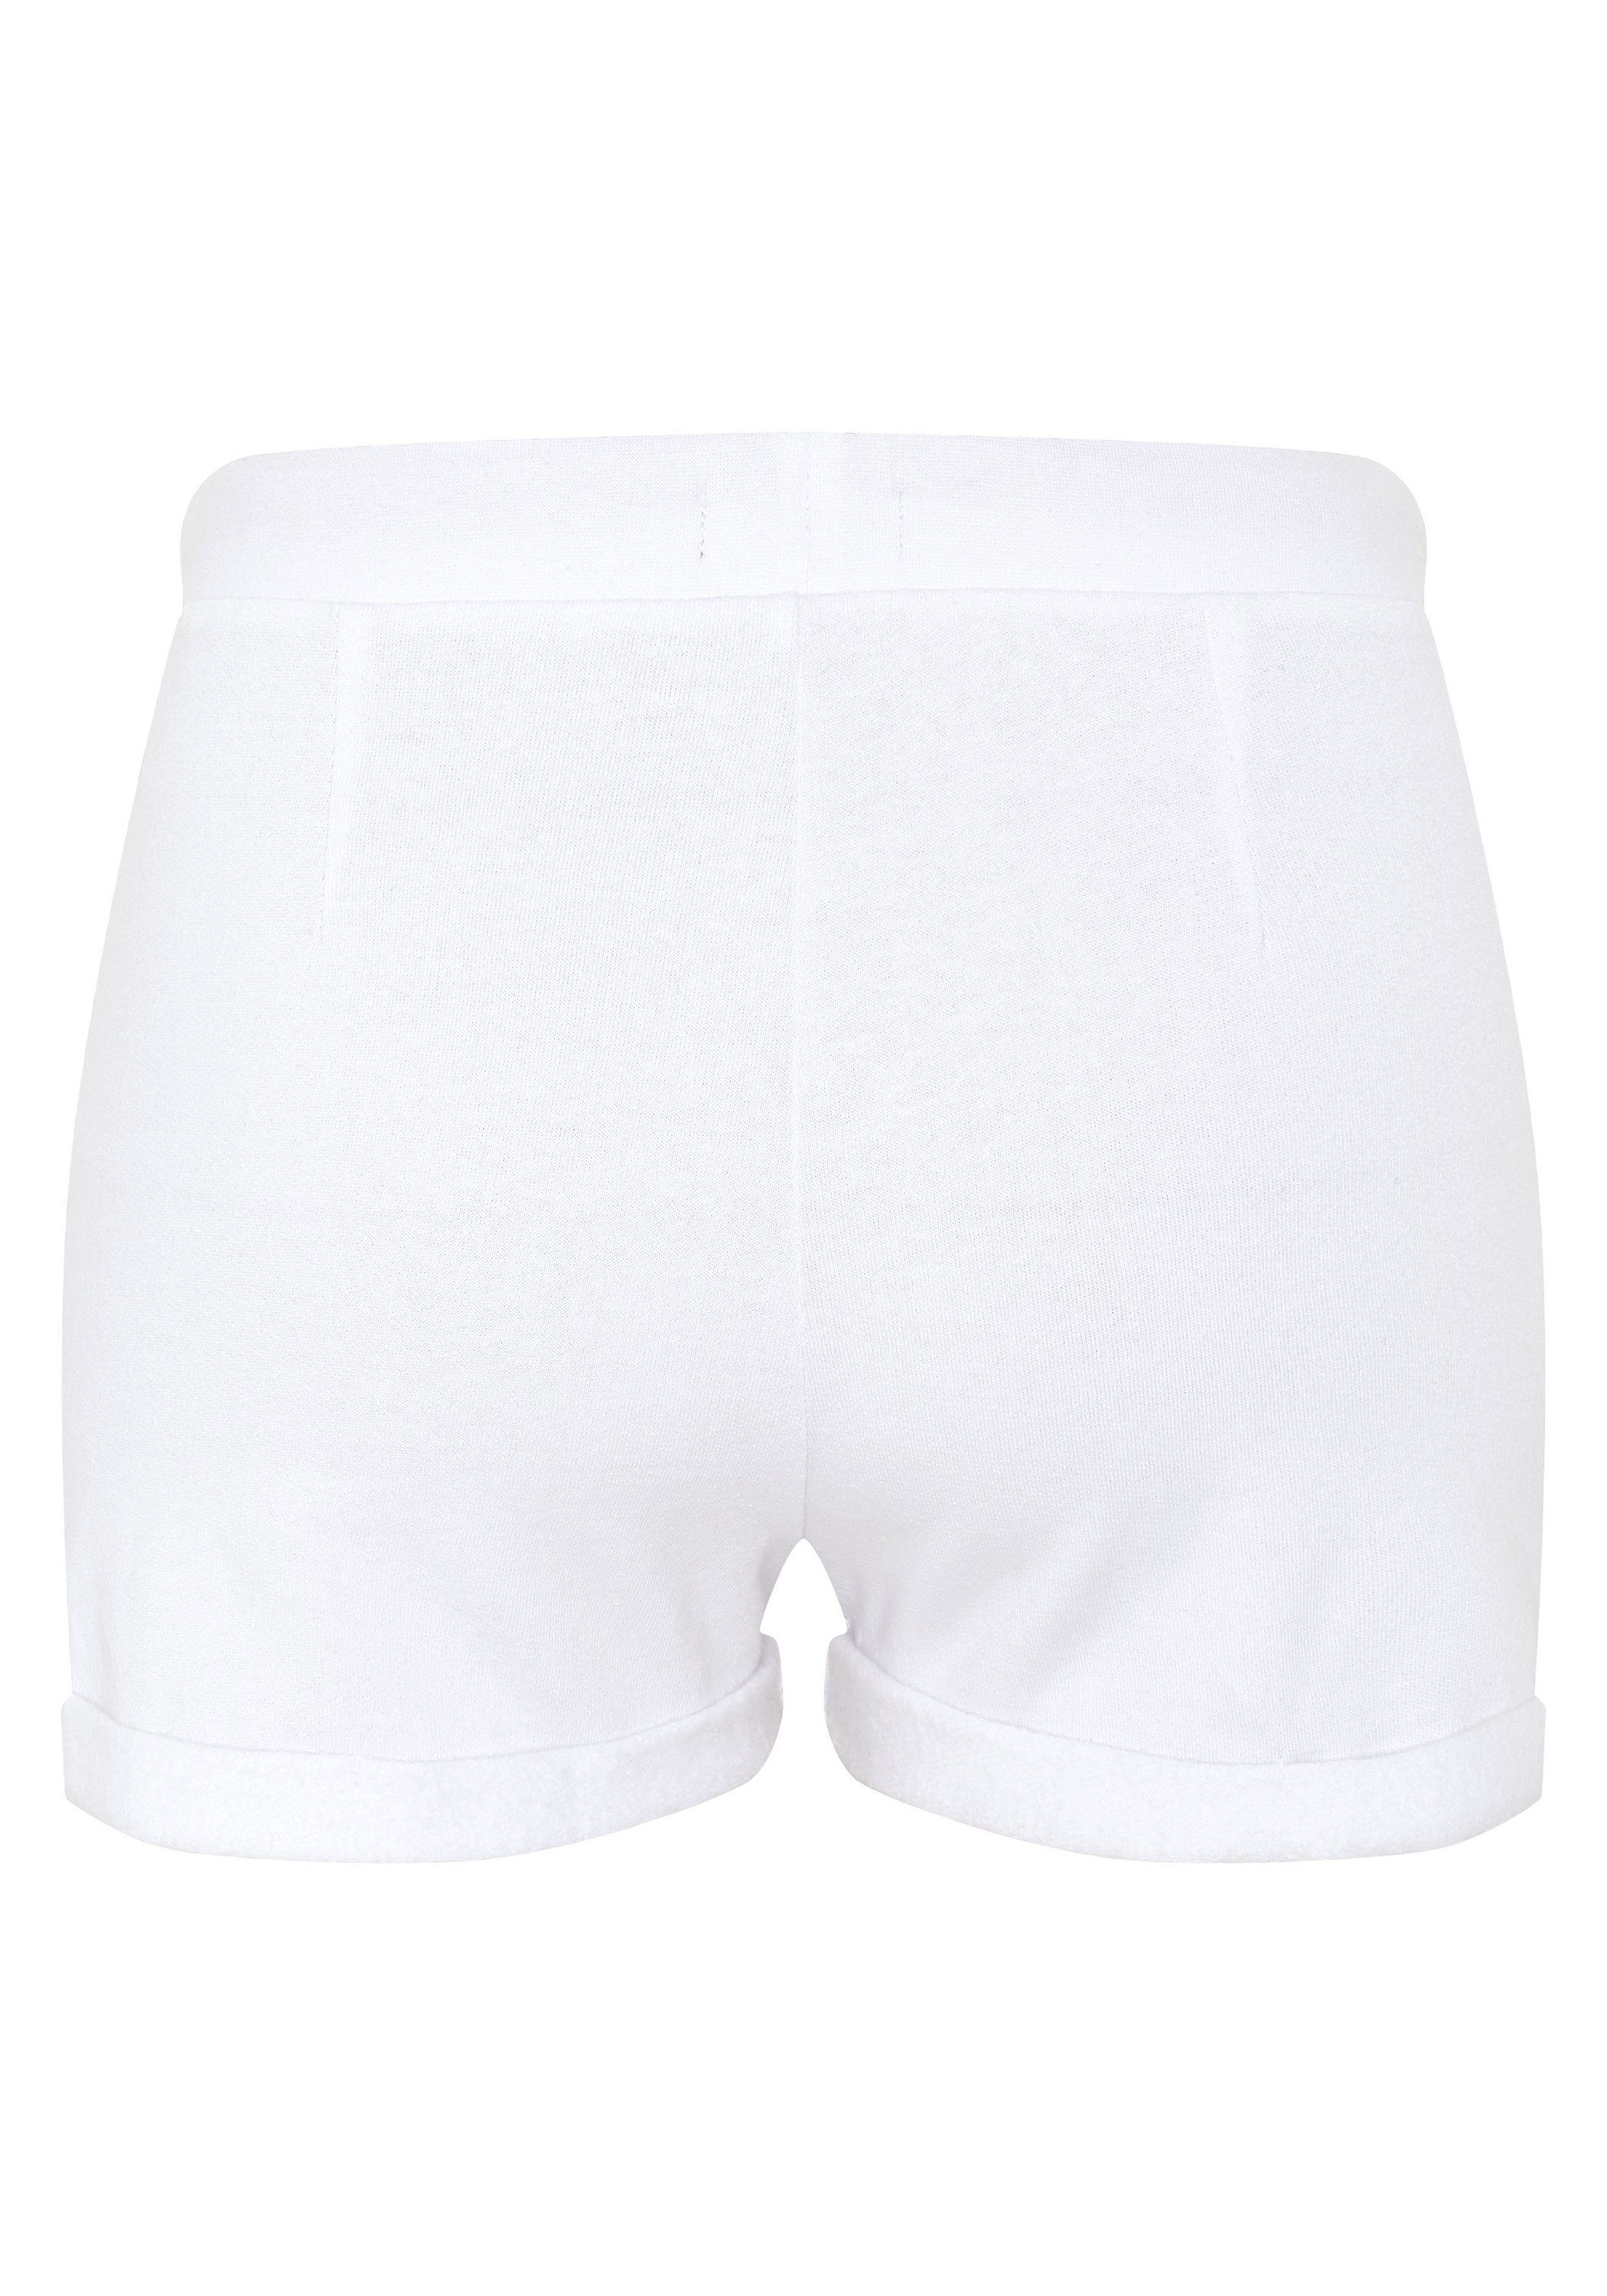 Oklahoma Jeans Sweatshorts 11-0601 Baumwollmischung White softer Bright aus